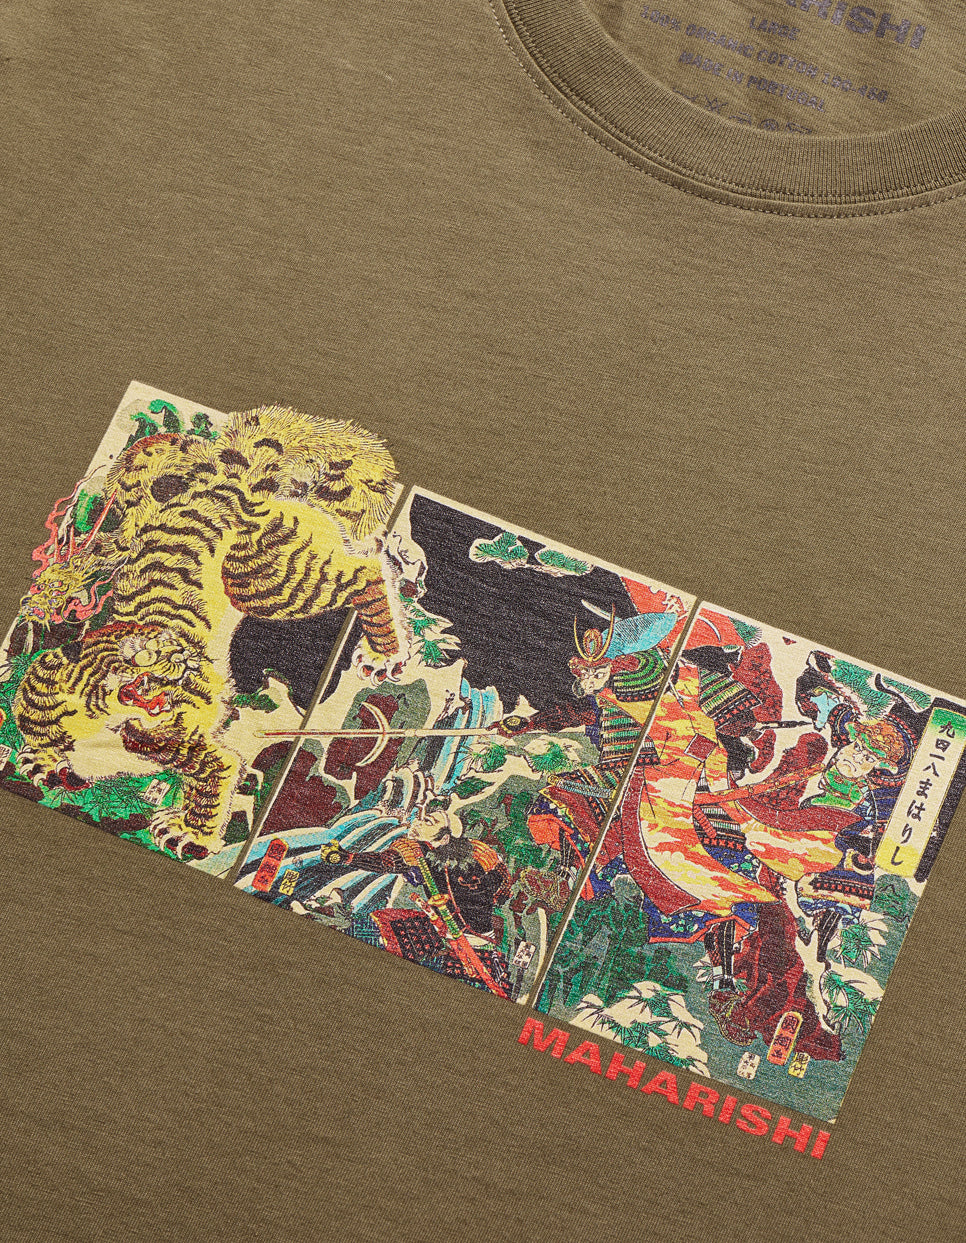 1079 Tiger vs. Samurai T-Shirt Olive